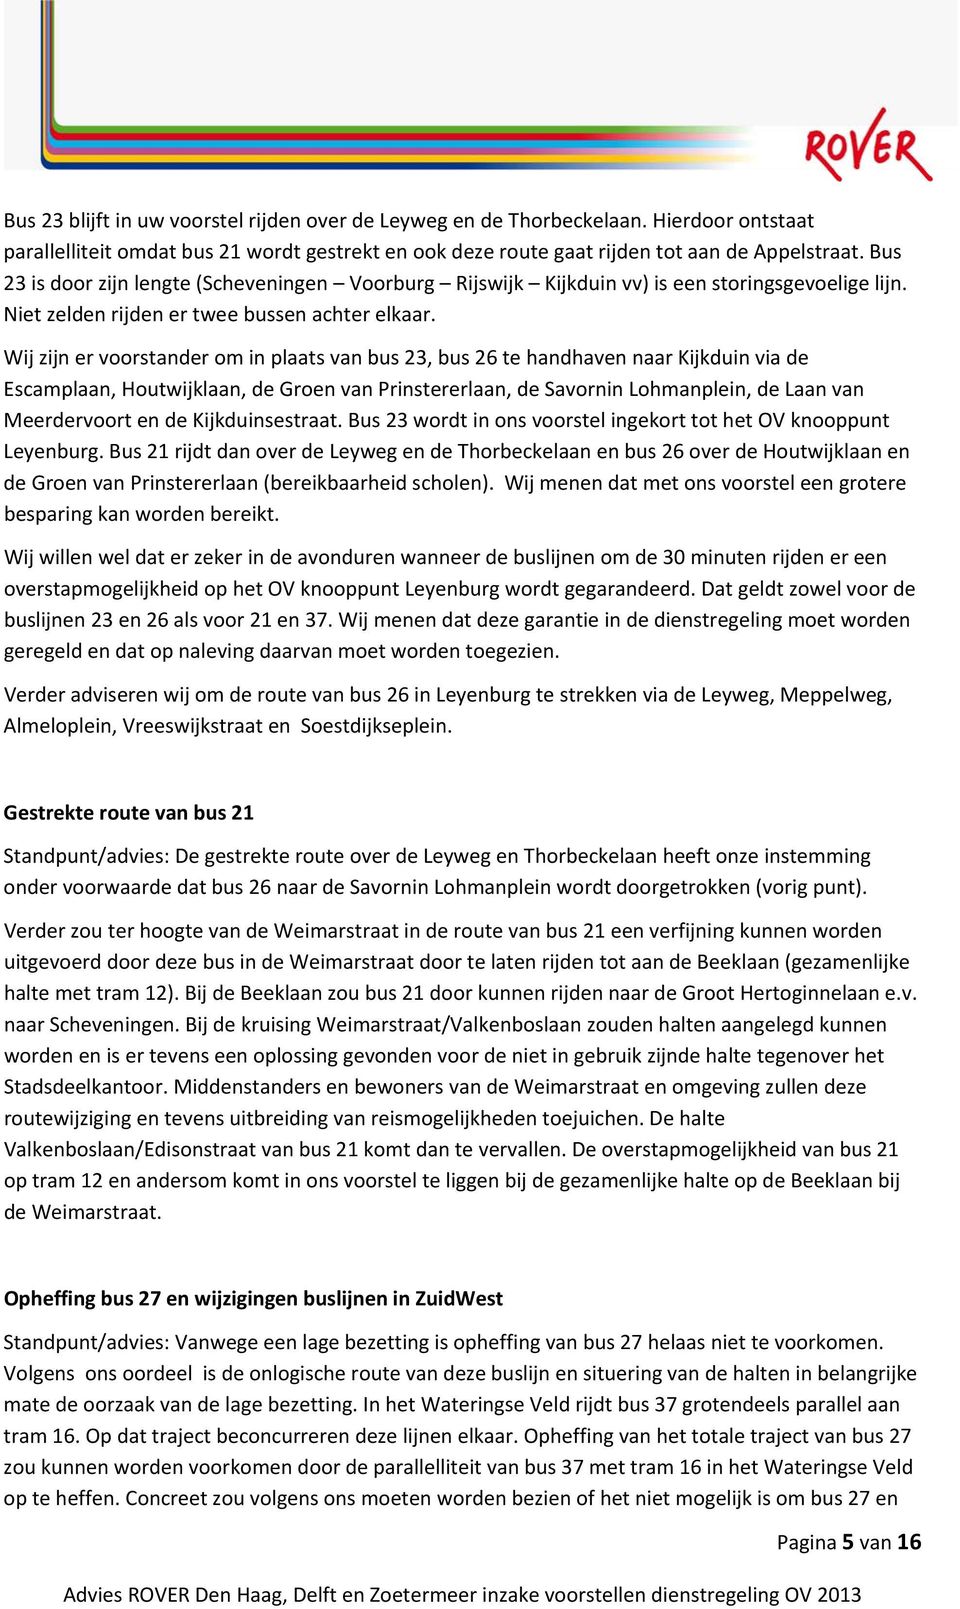 Wij zijn er voorstander om in plaats van bus 23, bus 26 te handhaven naar Kijkduin via de Escamplaan, Houtwijklaan, de Groen van Prinstererlaan, de Savornin Lohmanplein, de Laan van Meerdervoort en